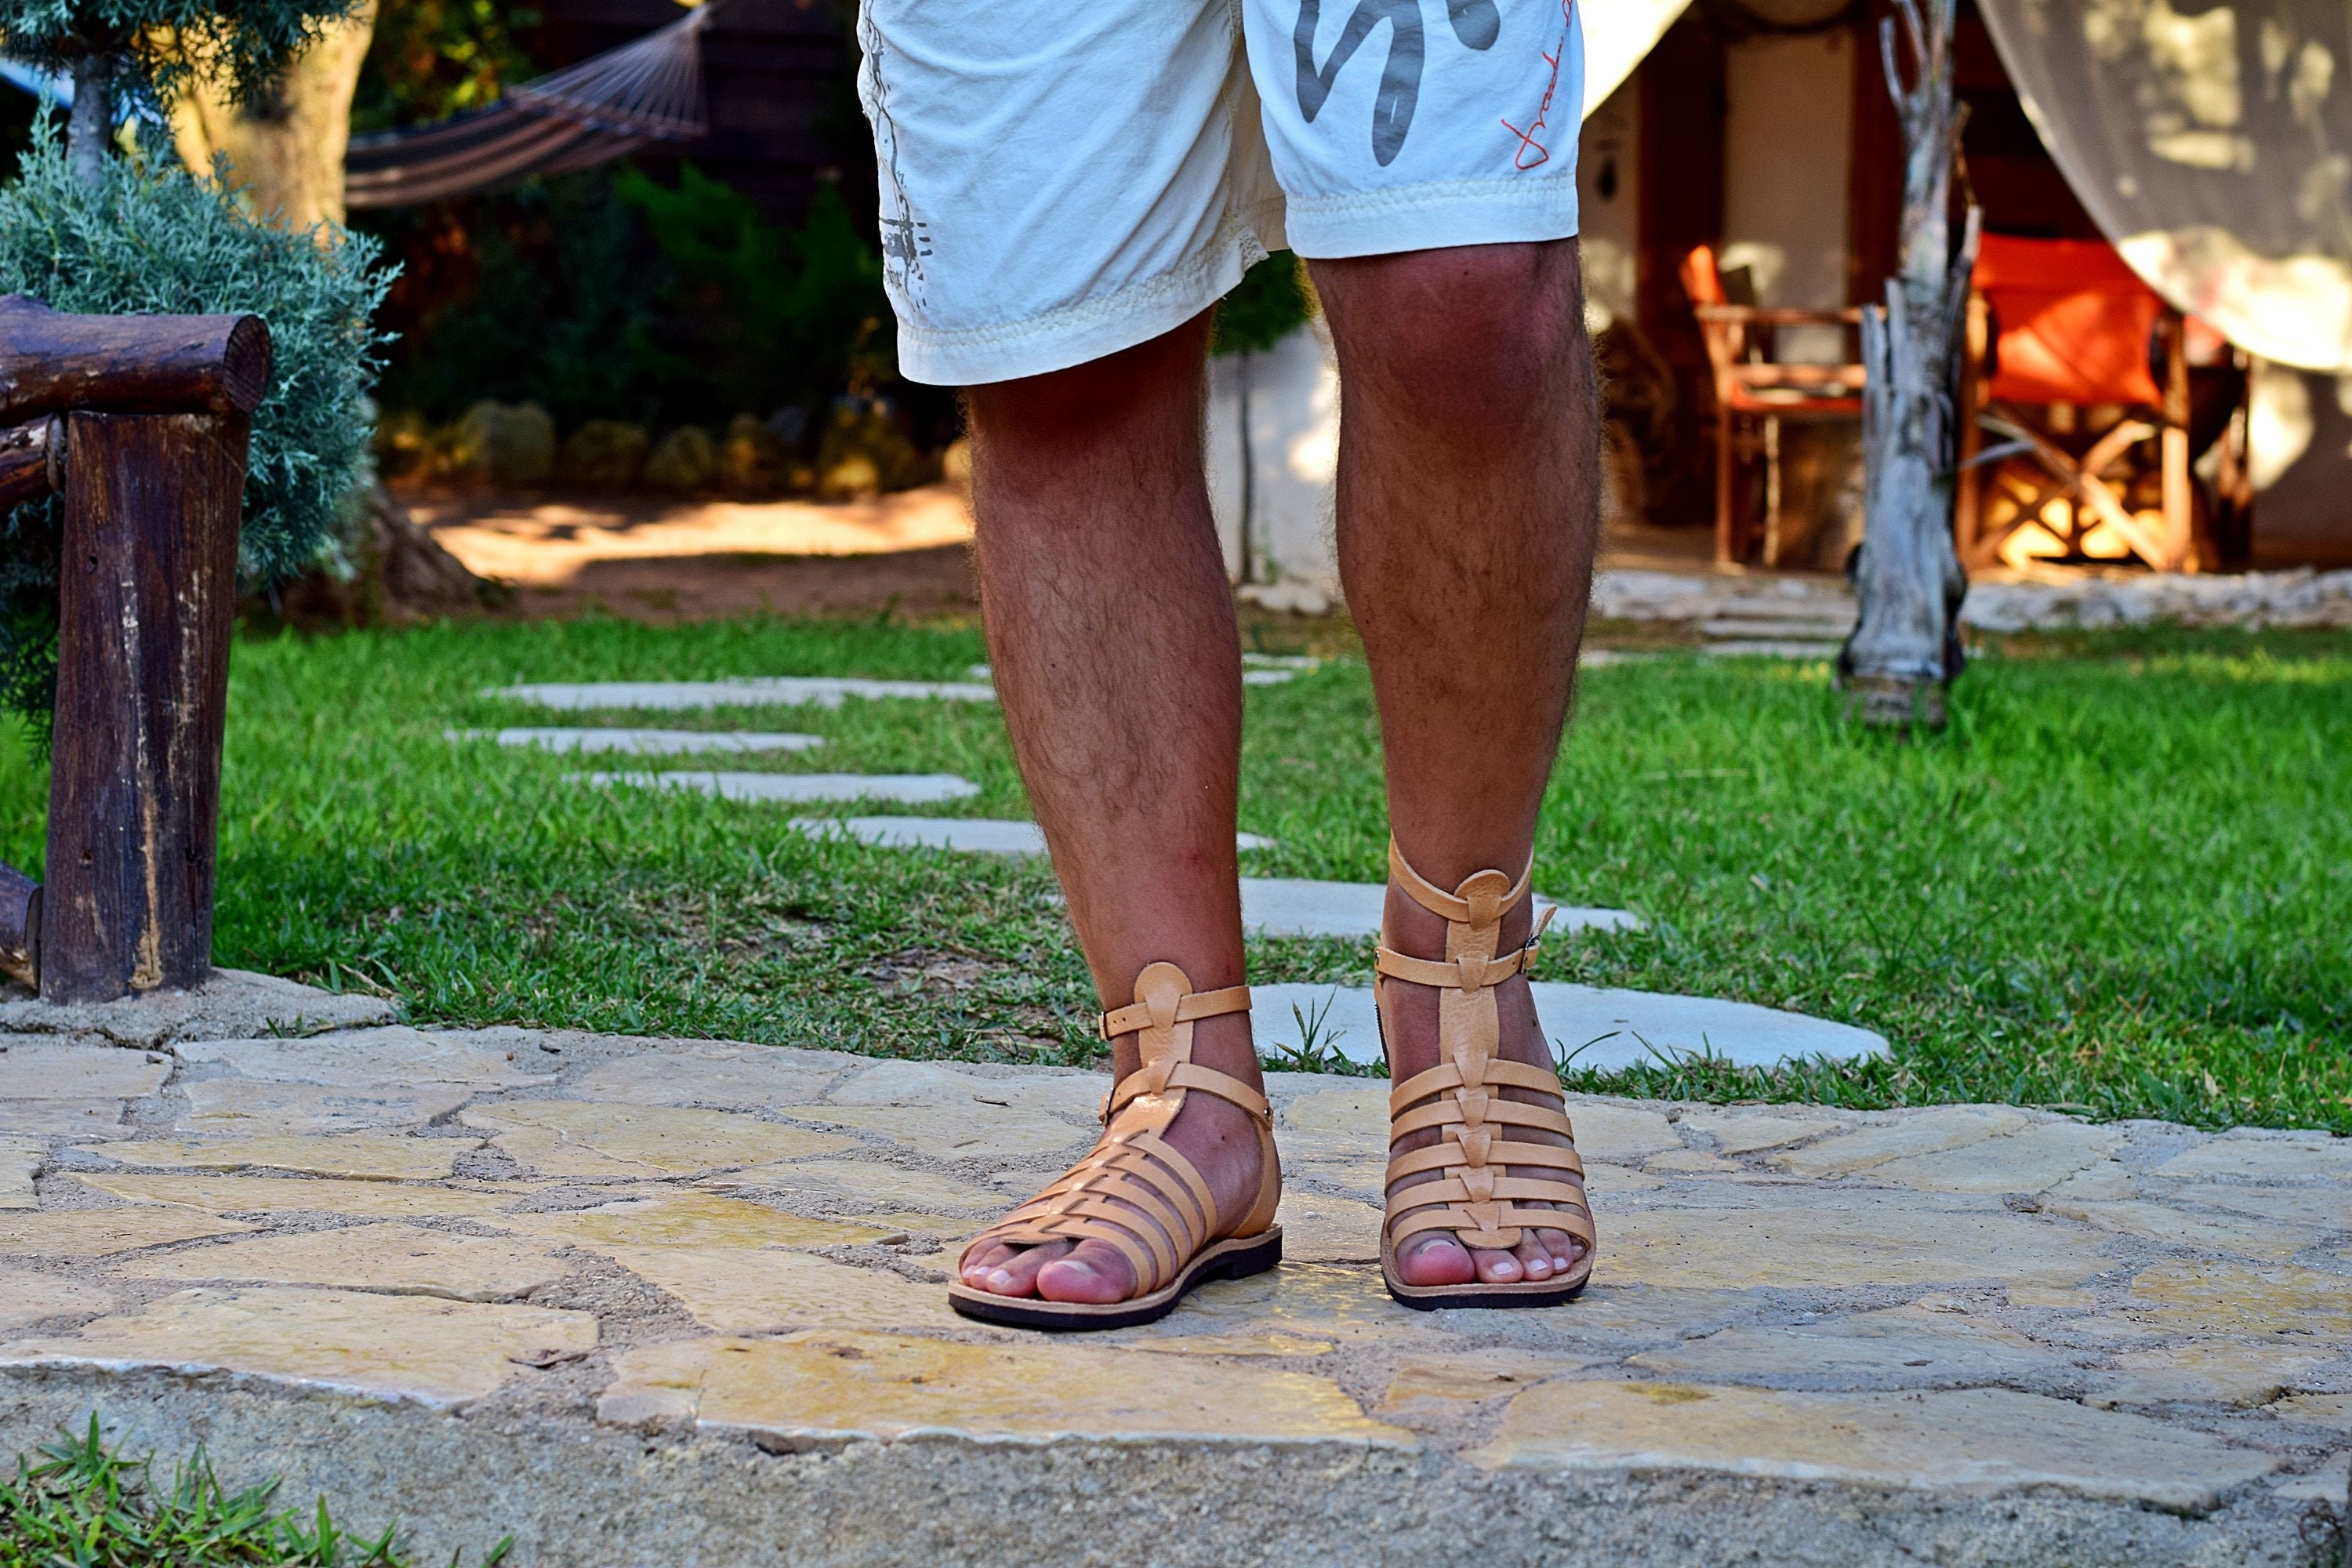 Roman Leather Sandal Men's Handmade Greek Gladiator Sandals From Calf Leather, Sandals Flat Summer Shoes, Gift for Him. Etsy